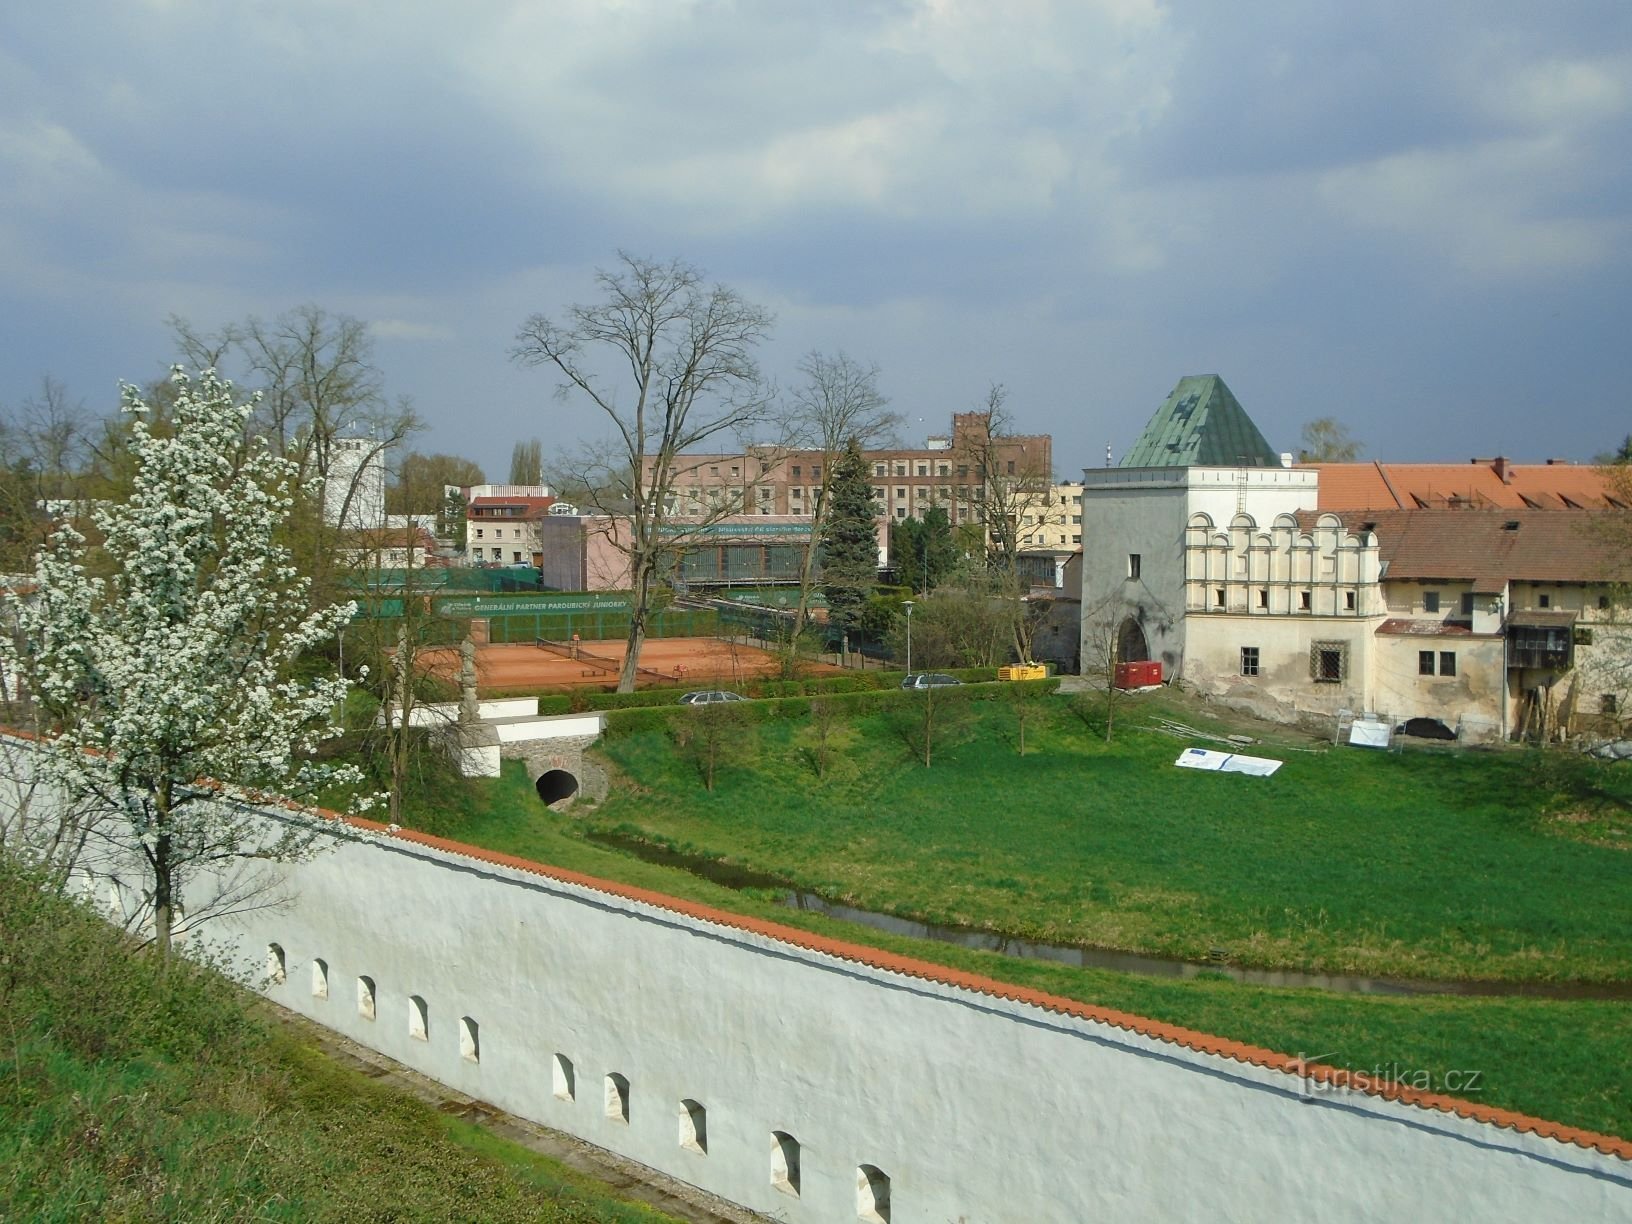 城堡和 Příhrádek 之间的桥梁景观（Pardubice，17.4.2018 年 XNUMX 月 XNUMX 日）